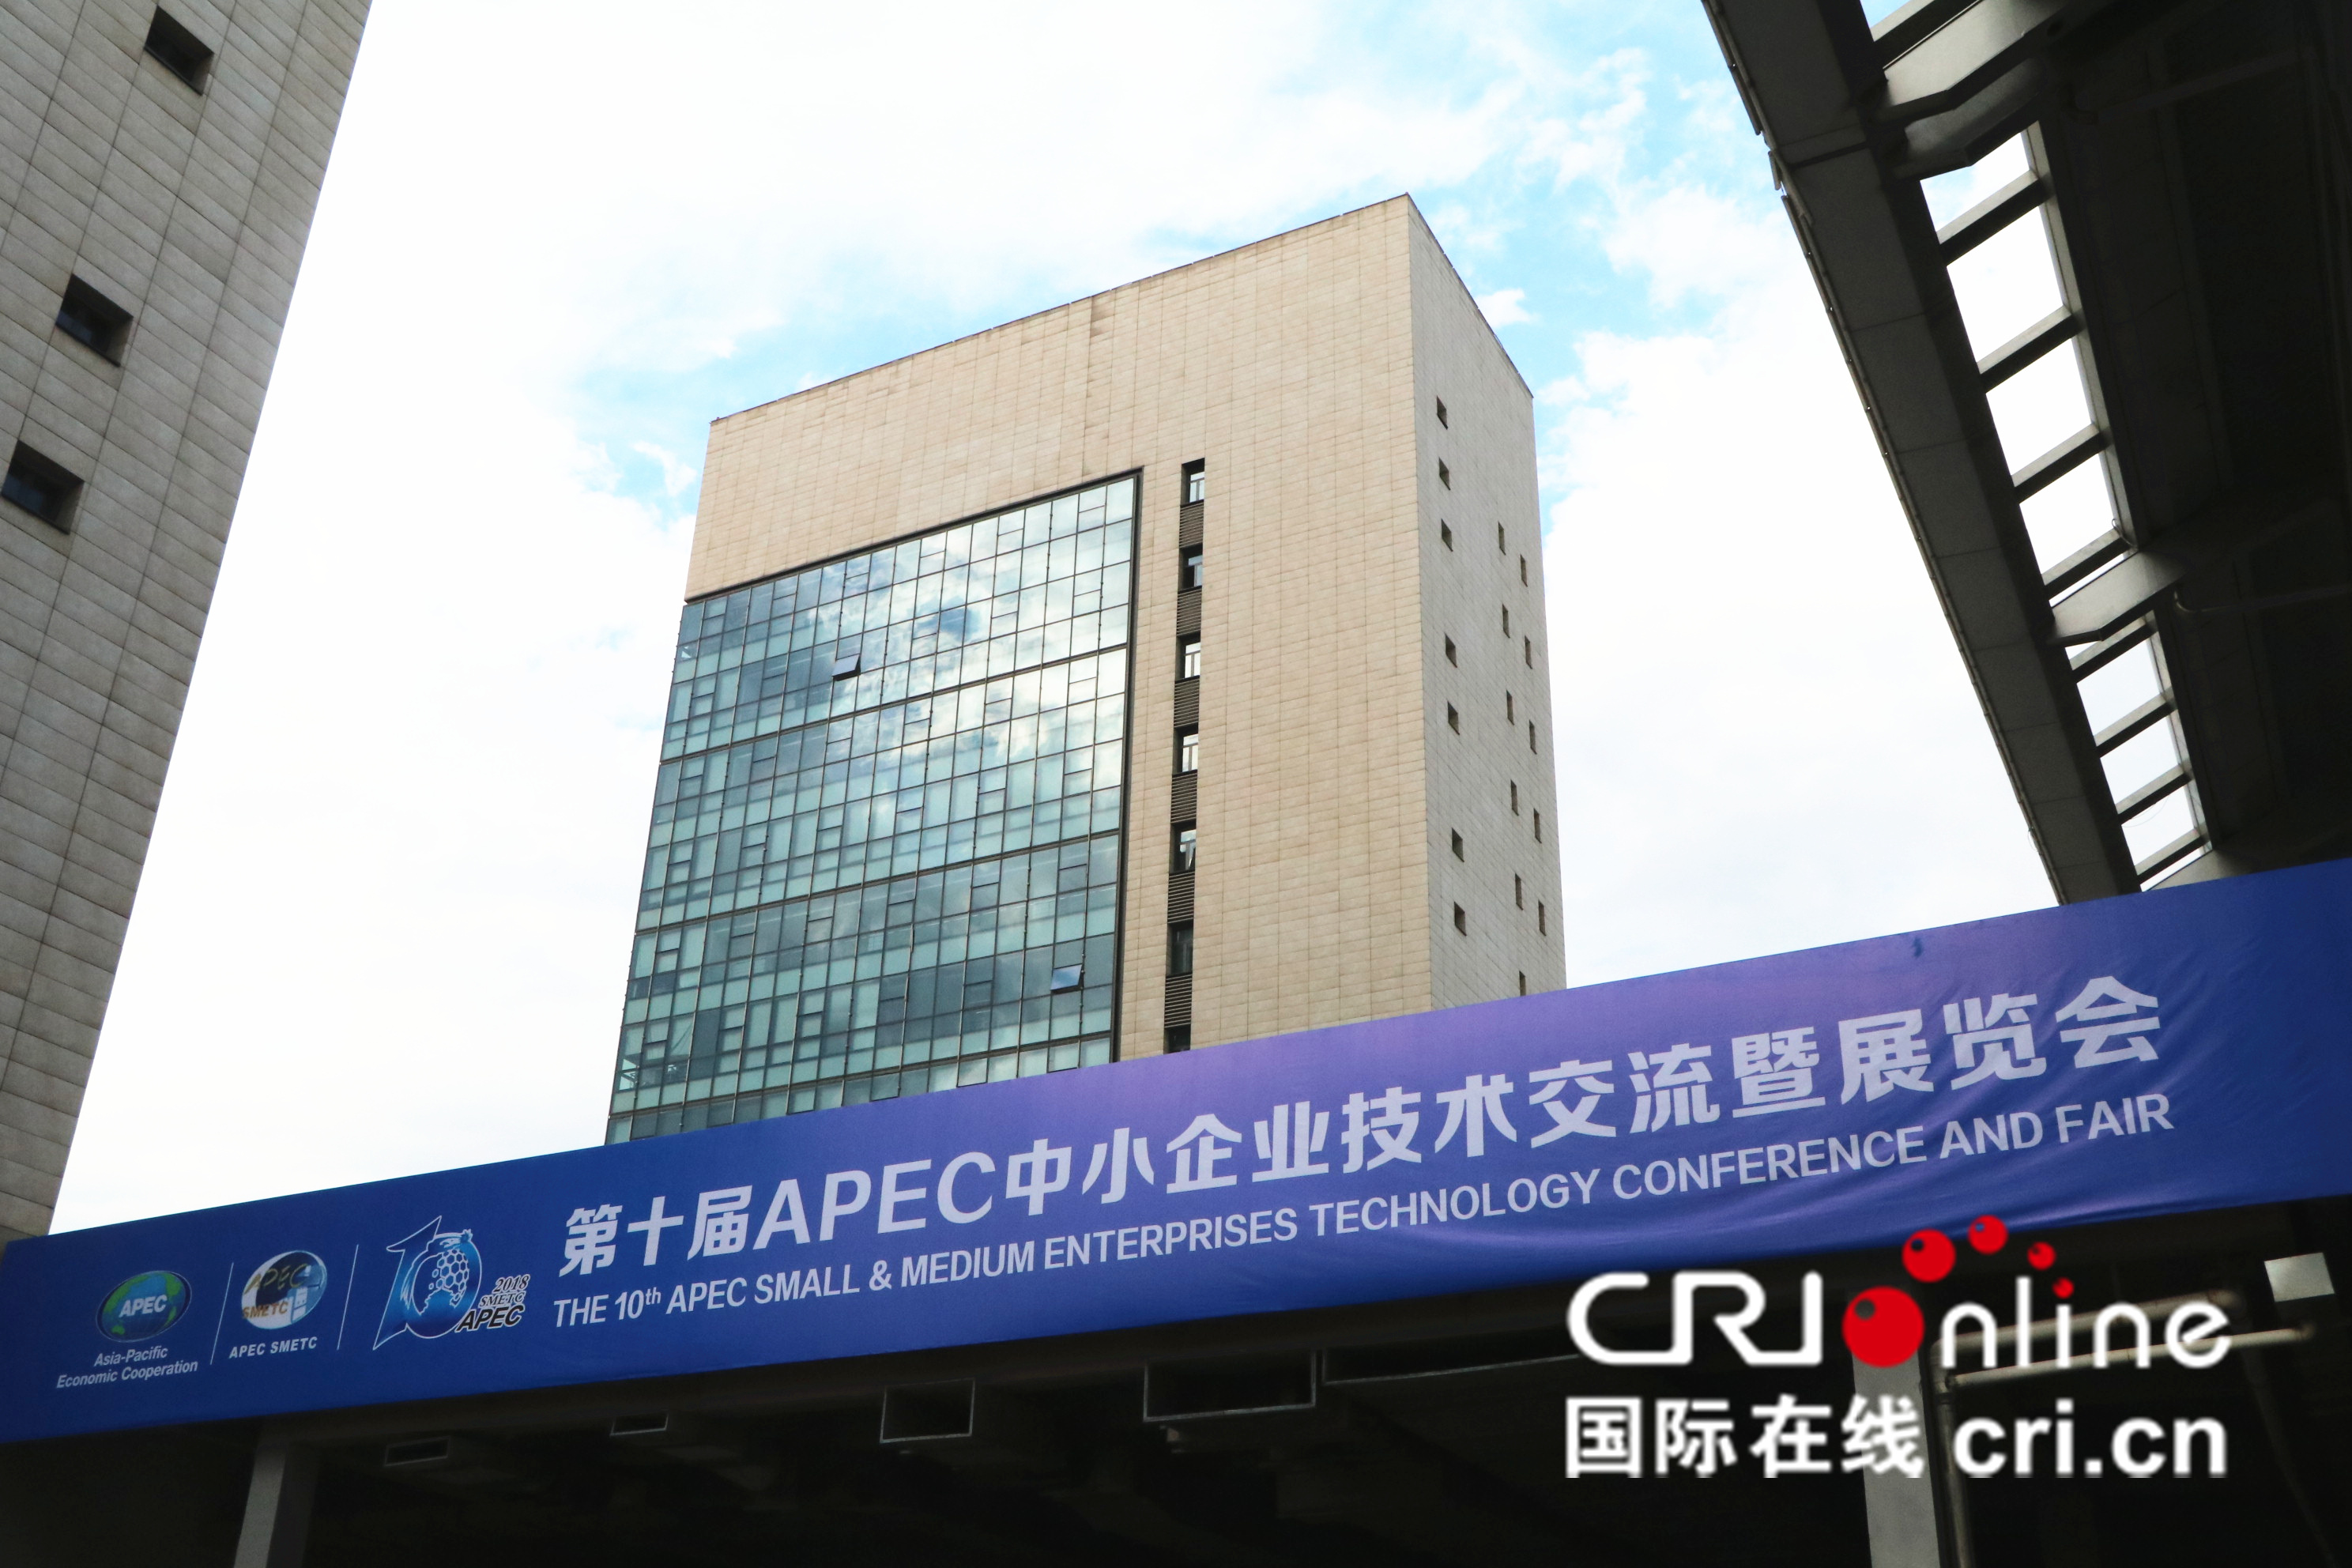 第十届APEC技展会,致力于加强APEC成员经济体的技术交流和经贸合作,推动APEC中小企业创新发展与合作共赢。沈阳作为建设国家全面创新改革试验区,将借此机会努力构建APEC中小企业的科技交流载体和国际合作平台。_fororder_第十届APEC技展会,致力于加强APEC成员经济体的技术交流和经贸合作,推动APEC中小企业创新发展与合作共赢。沈阳作为建设国家全面创新改革试验区,将借此机会努力构建APEC中小企业的科技交流载体和国际合作平台。